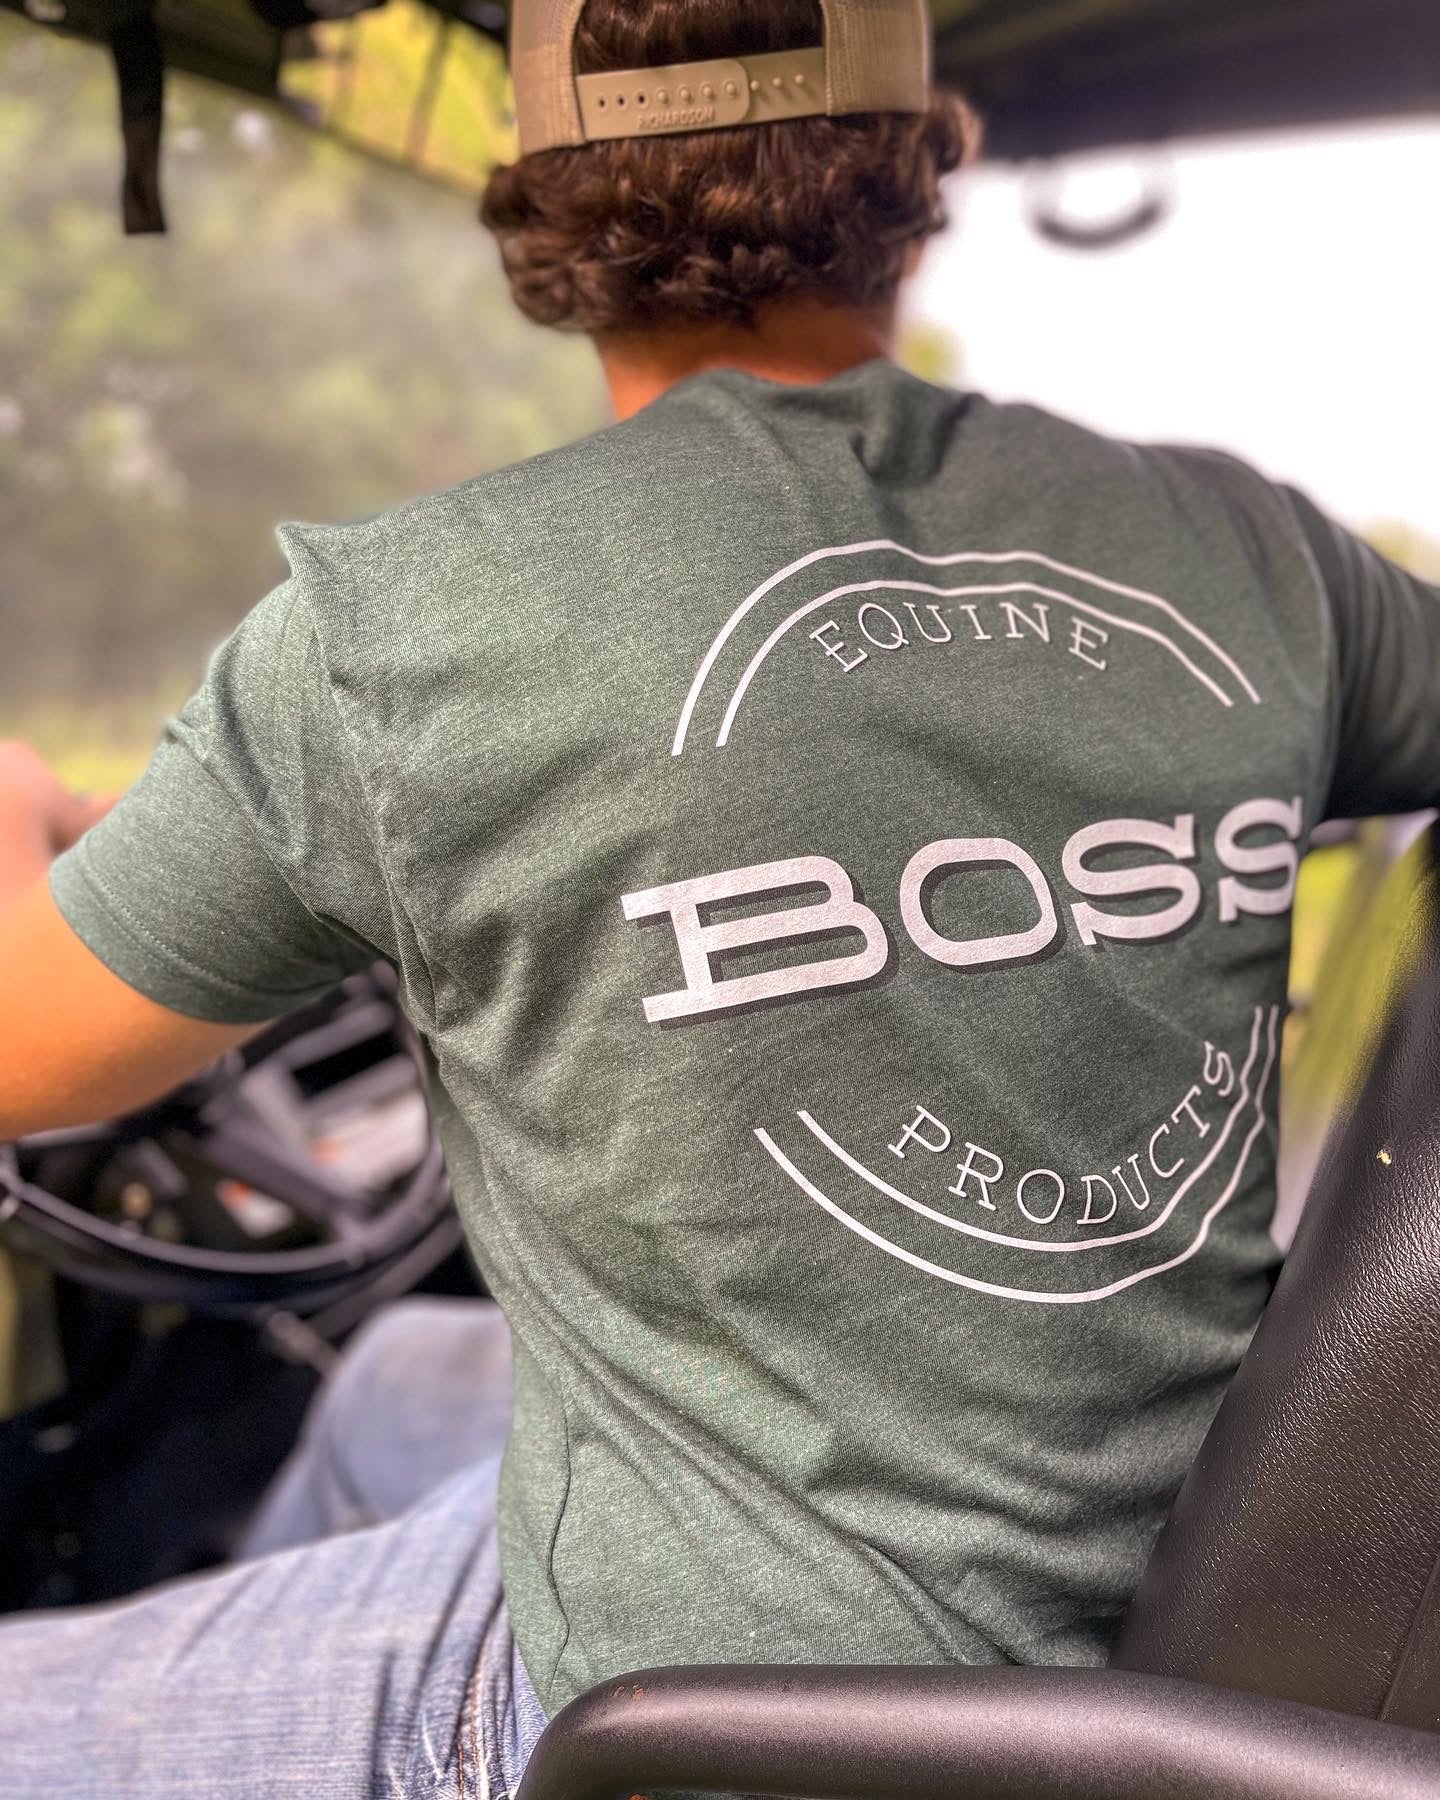 BOSS™ T-Shirt - Short Sleeve